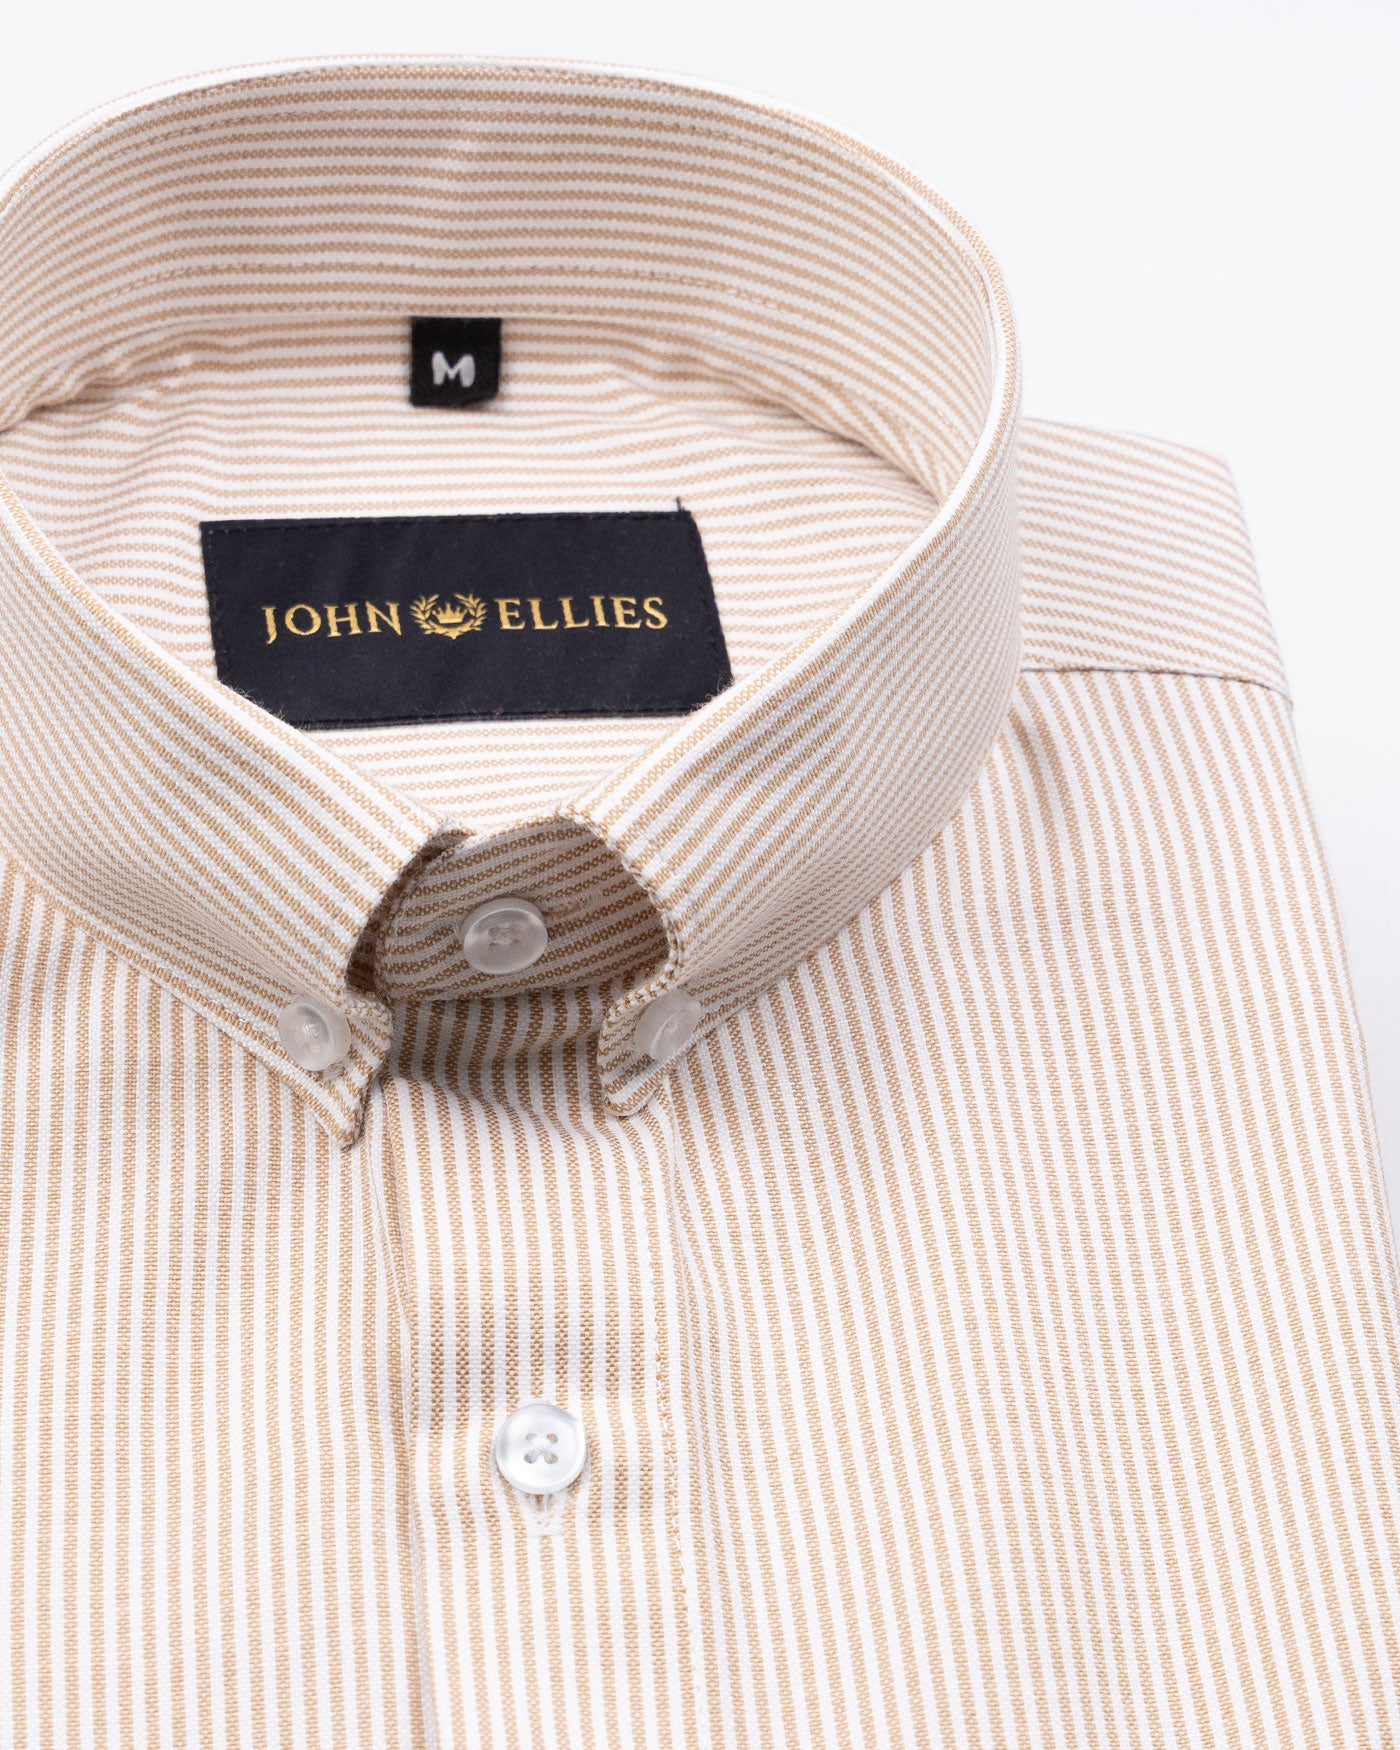 Siento Felix Orange Stripe Oxford Cotton Shirt - John Ellies